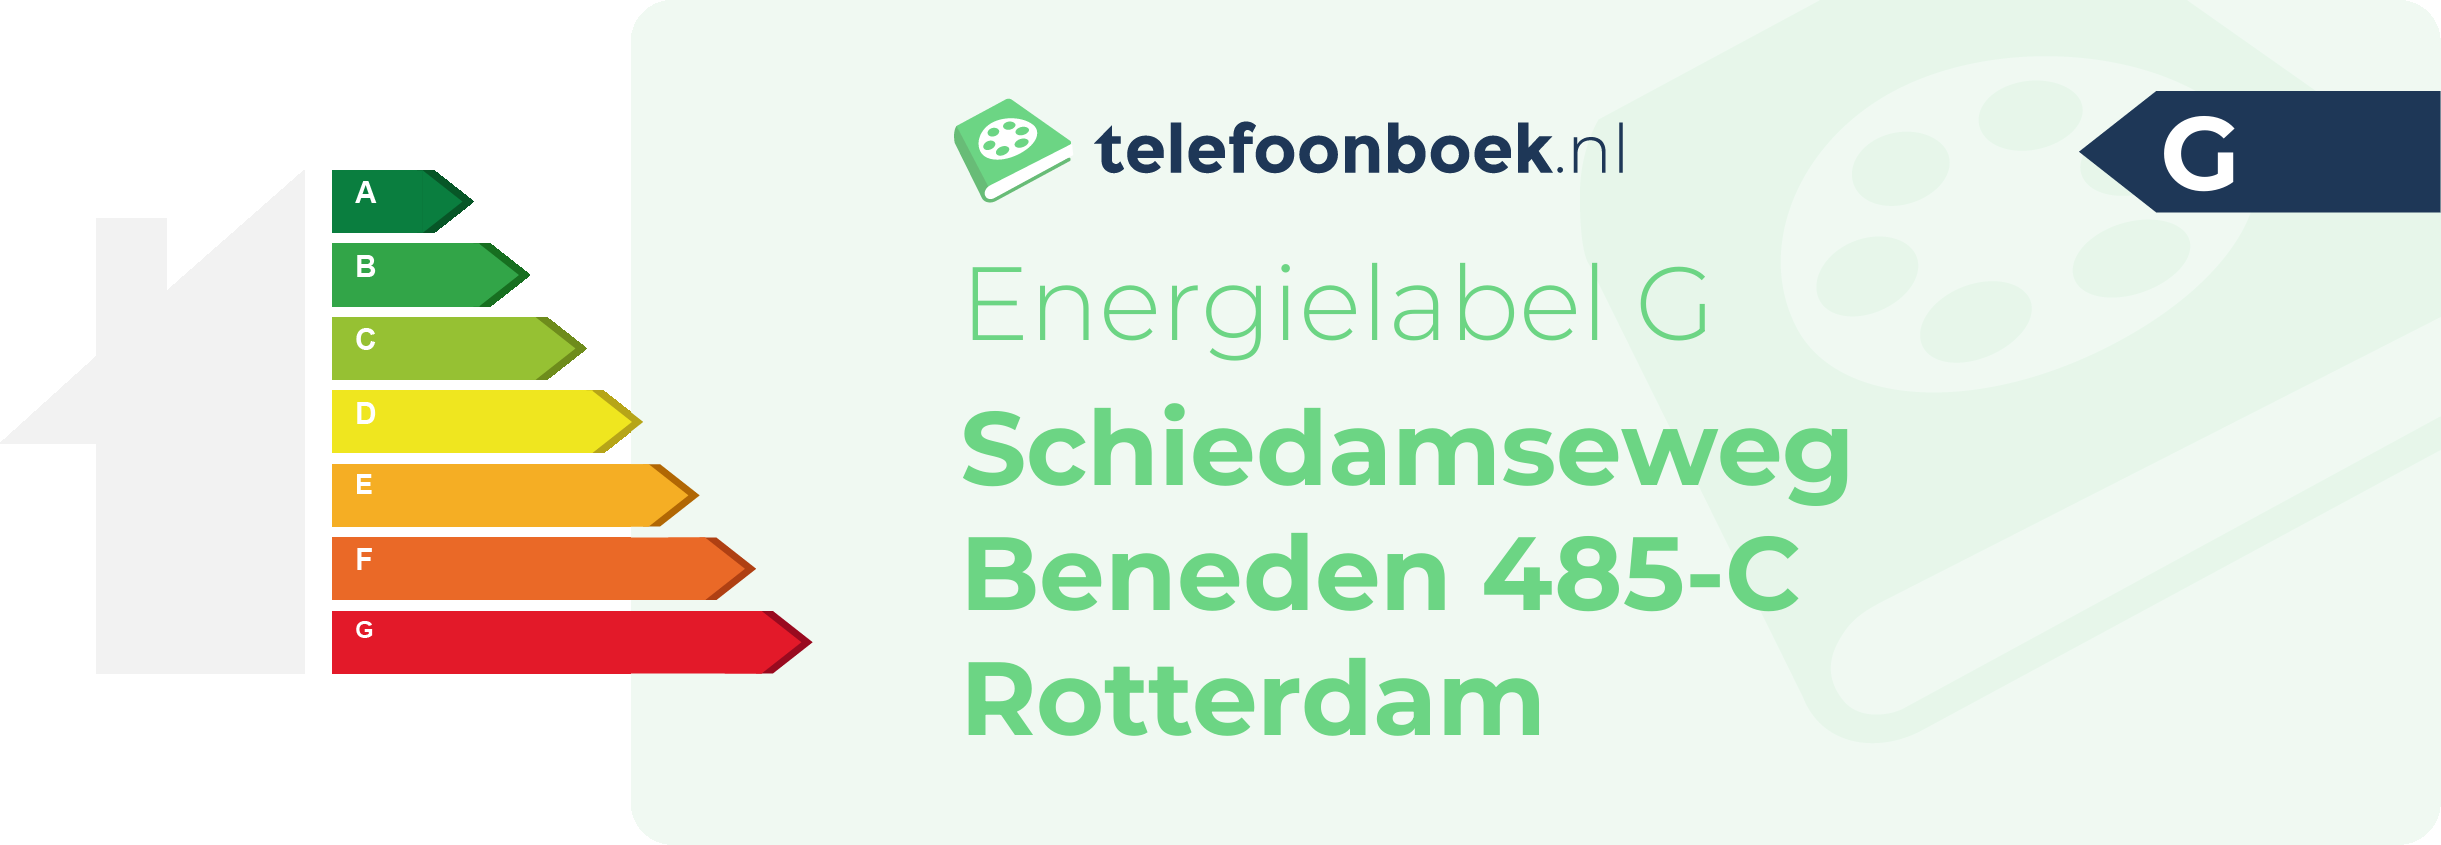 Energielabel Schiedamseweg Beneden 485-C Rotterdam